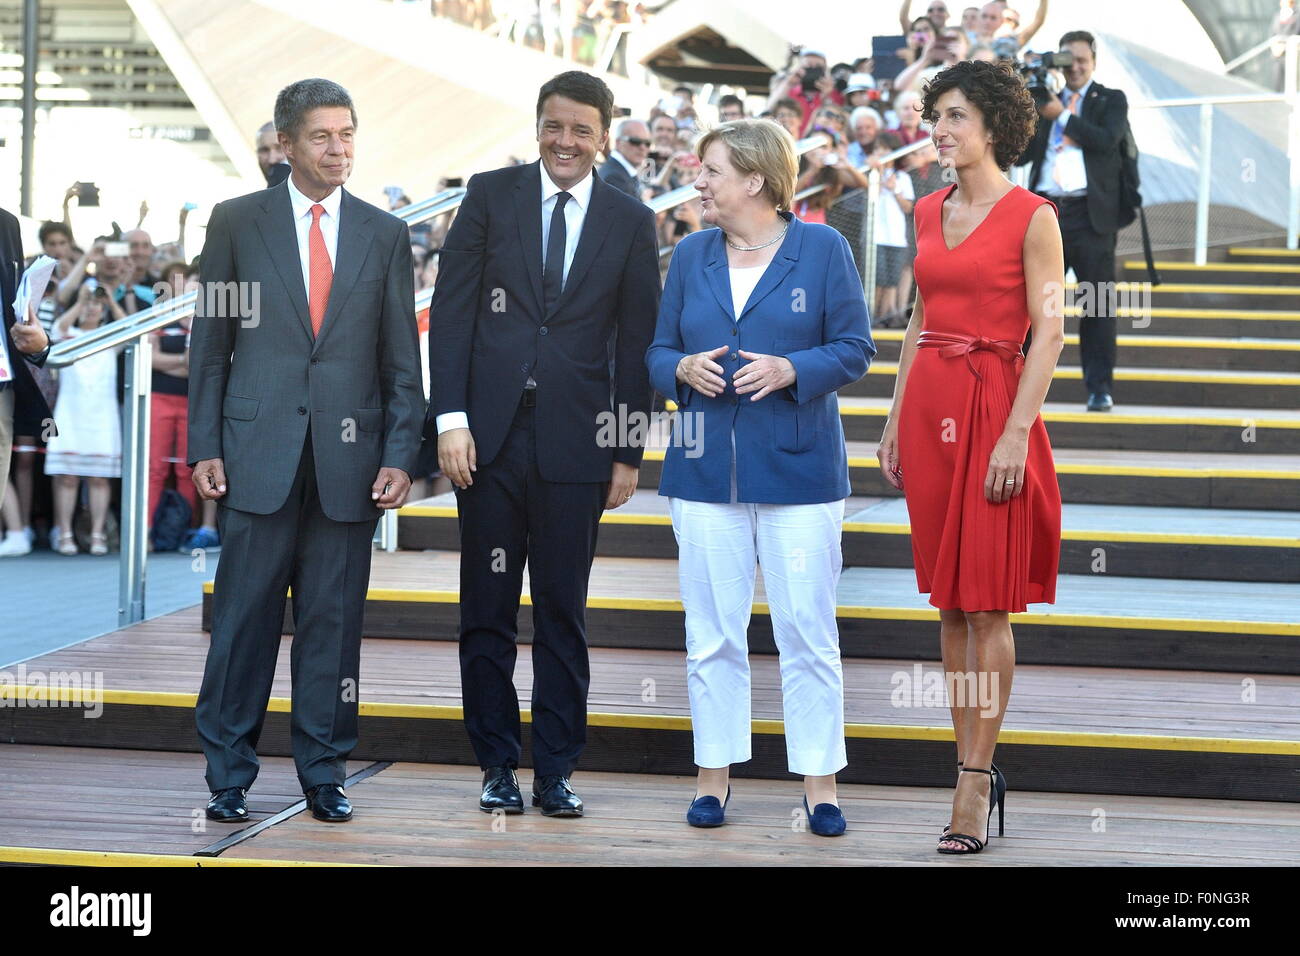 La chancelière Angela Merkel avec son mari Joachim Sauer, le premier ministre Matteo Renzi et l'épouse Agnese Landini . L'Expo 2015. Milan. L'Italie. 17/08/2015 Banque D'Images